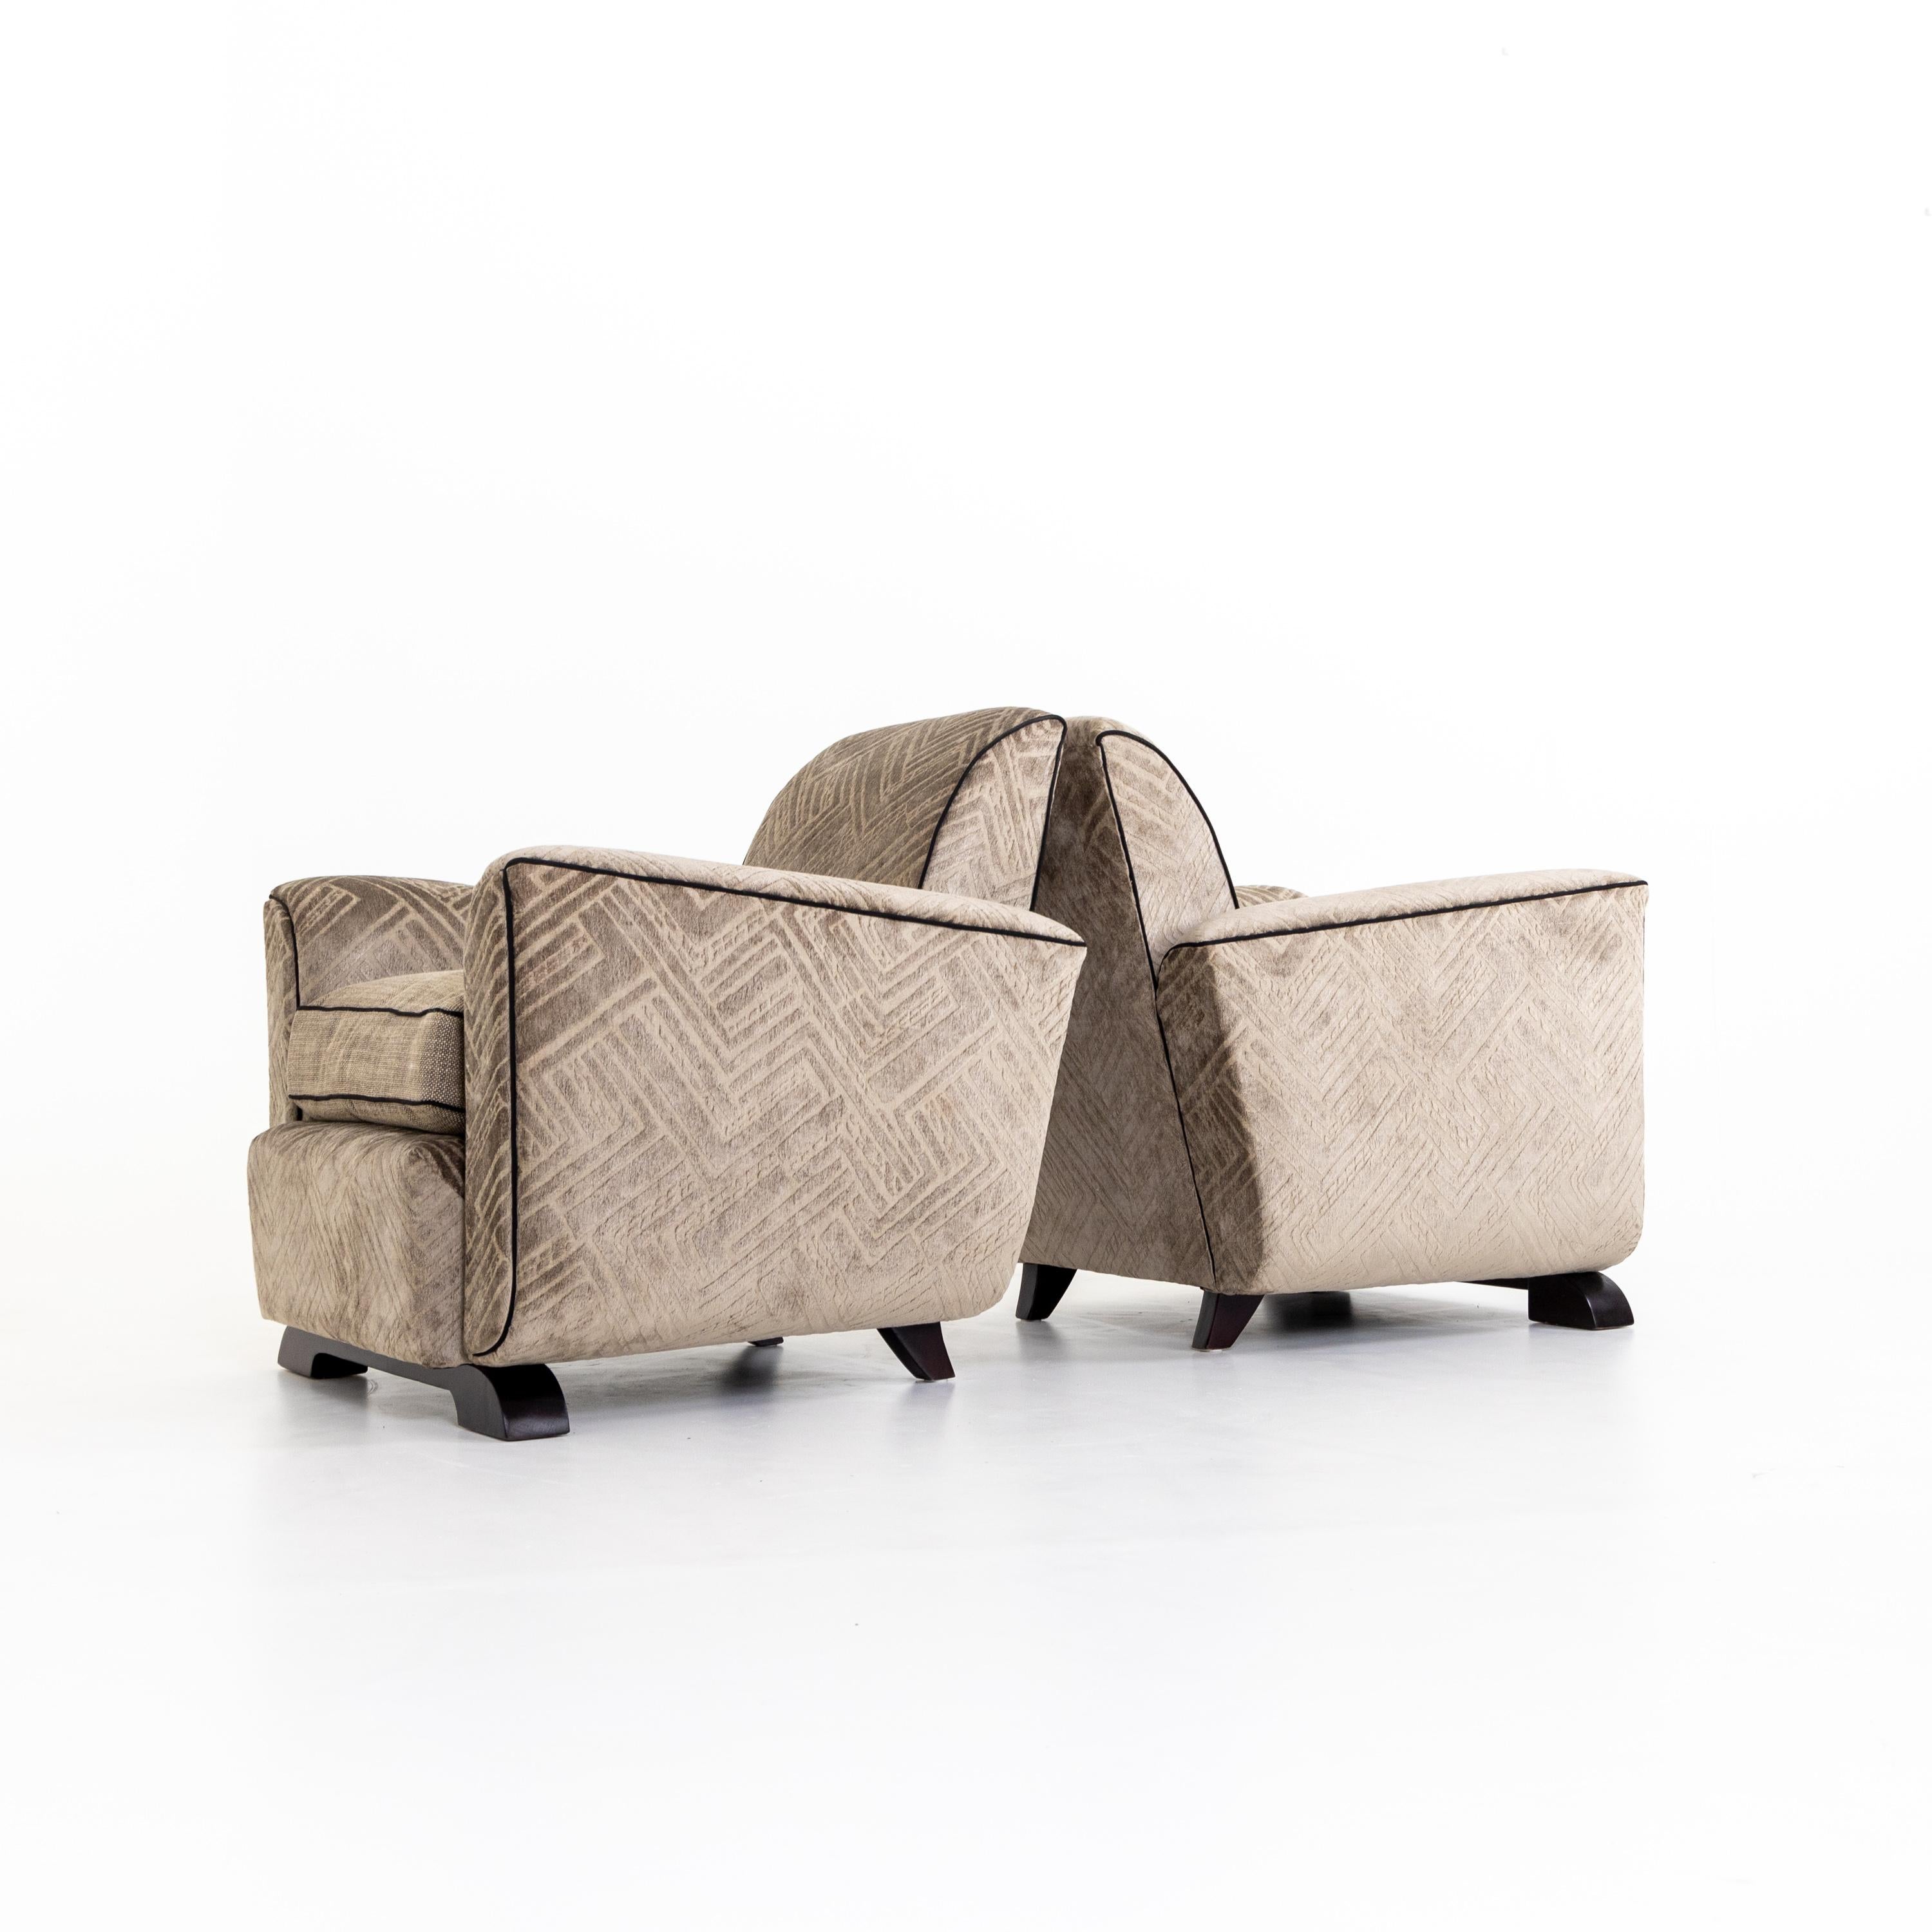 Paire de fauteuils Art Déco avec sièges tapissés, légèrement tulipés, reposant sur des pieds en bois. Les fauteuils ont été retapissés dans un tissu gris-brun à motif géométrique.